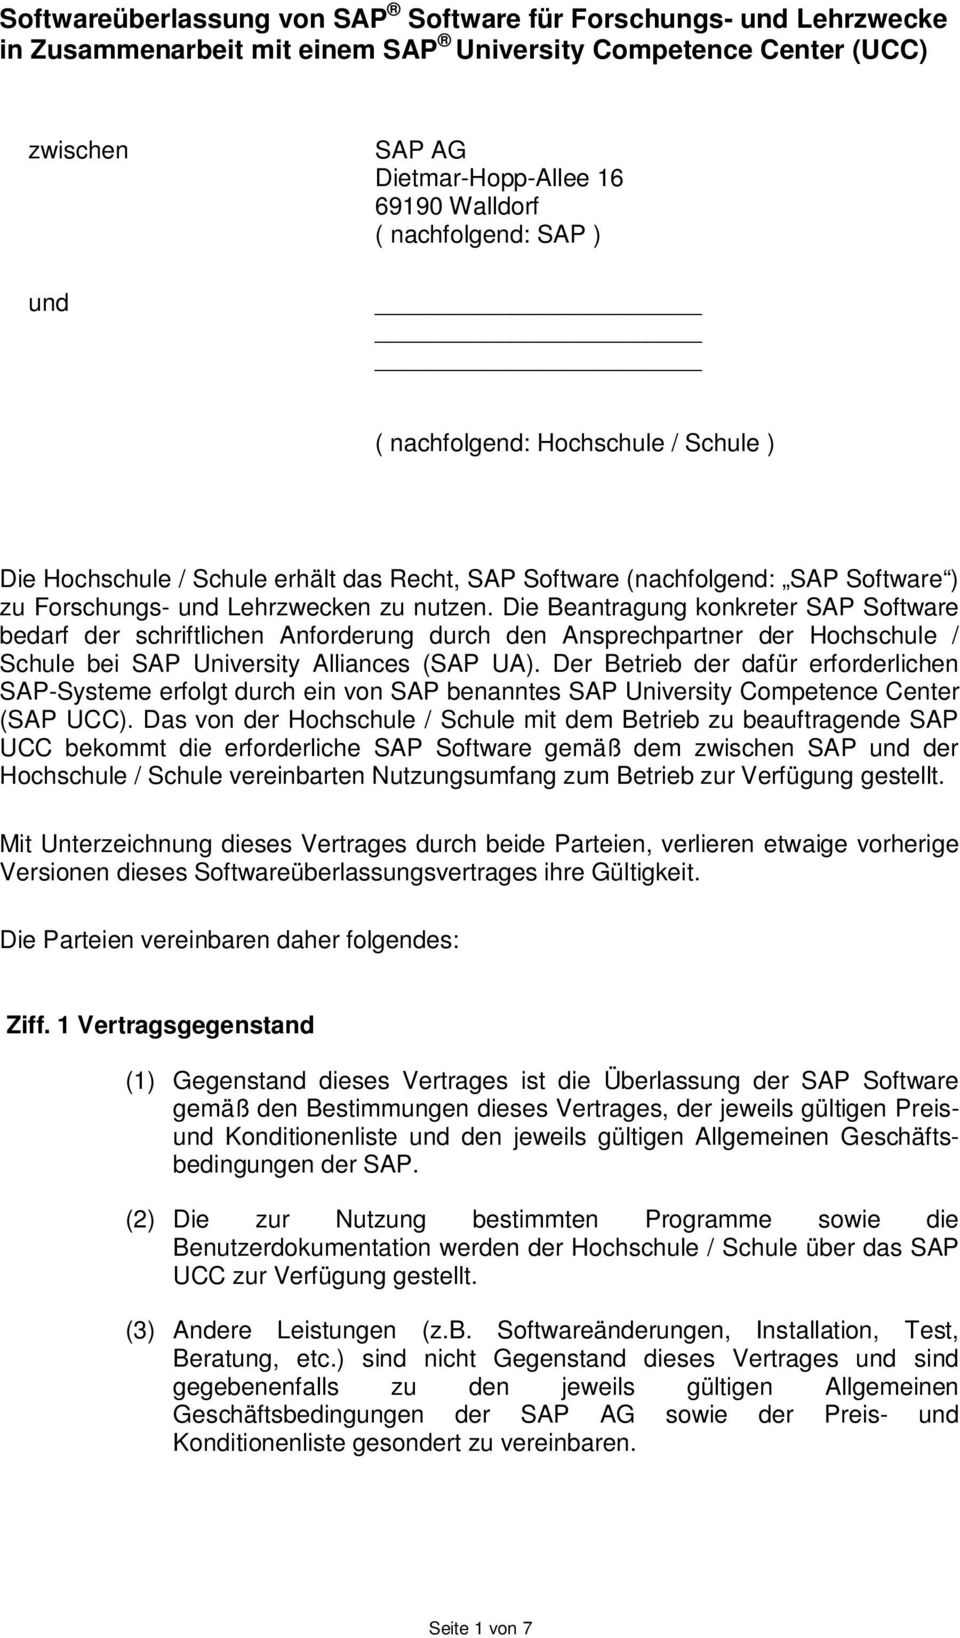 Die Beantragung konkreter SAP Software bedarf der schriftlichen Anforderung durch den Ansprechpartner der Hochschule / Schule bei SAP University Alliances (SAP UA).